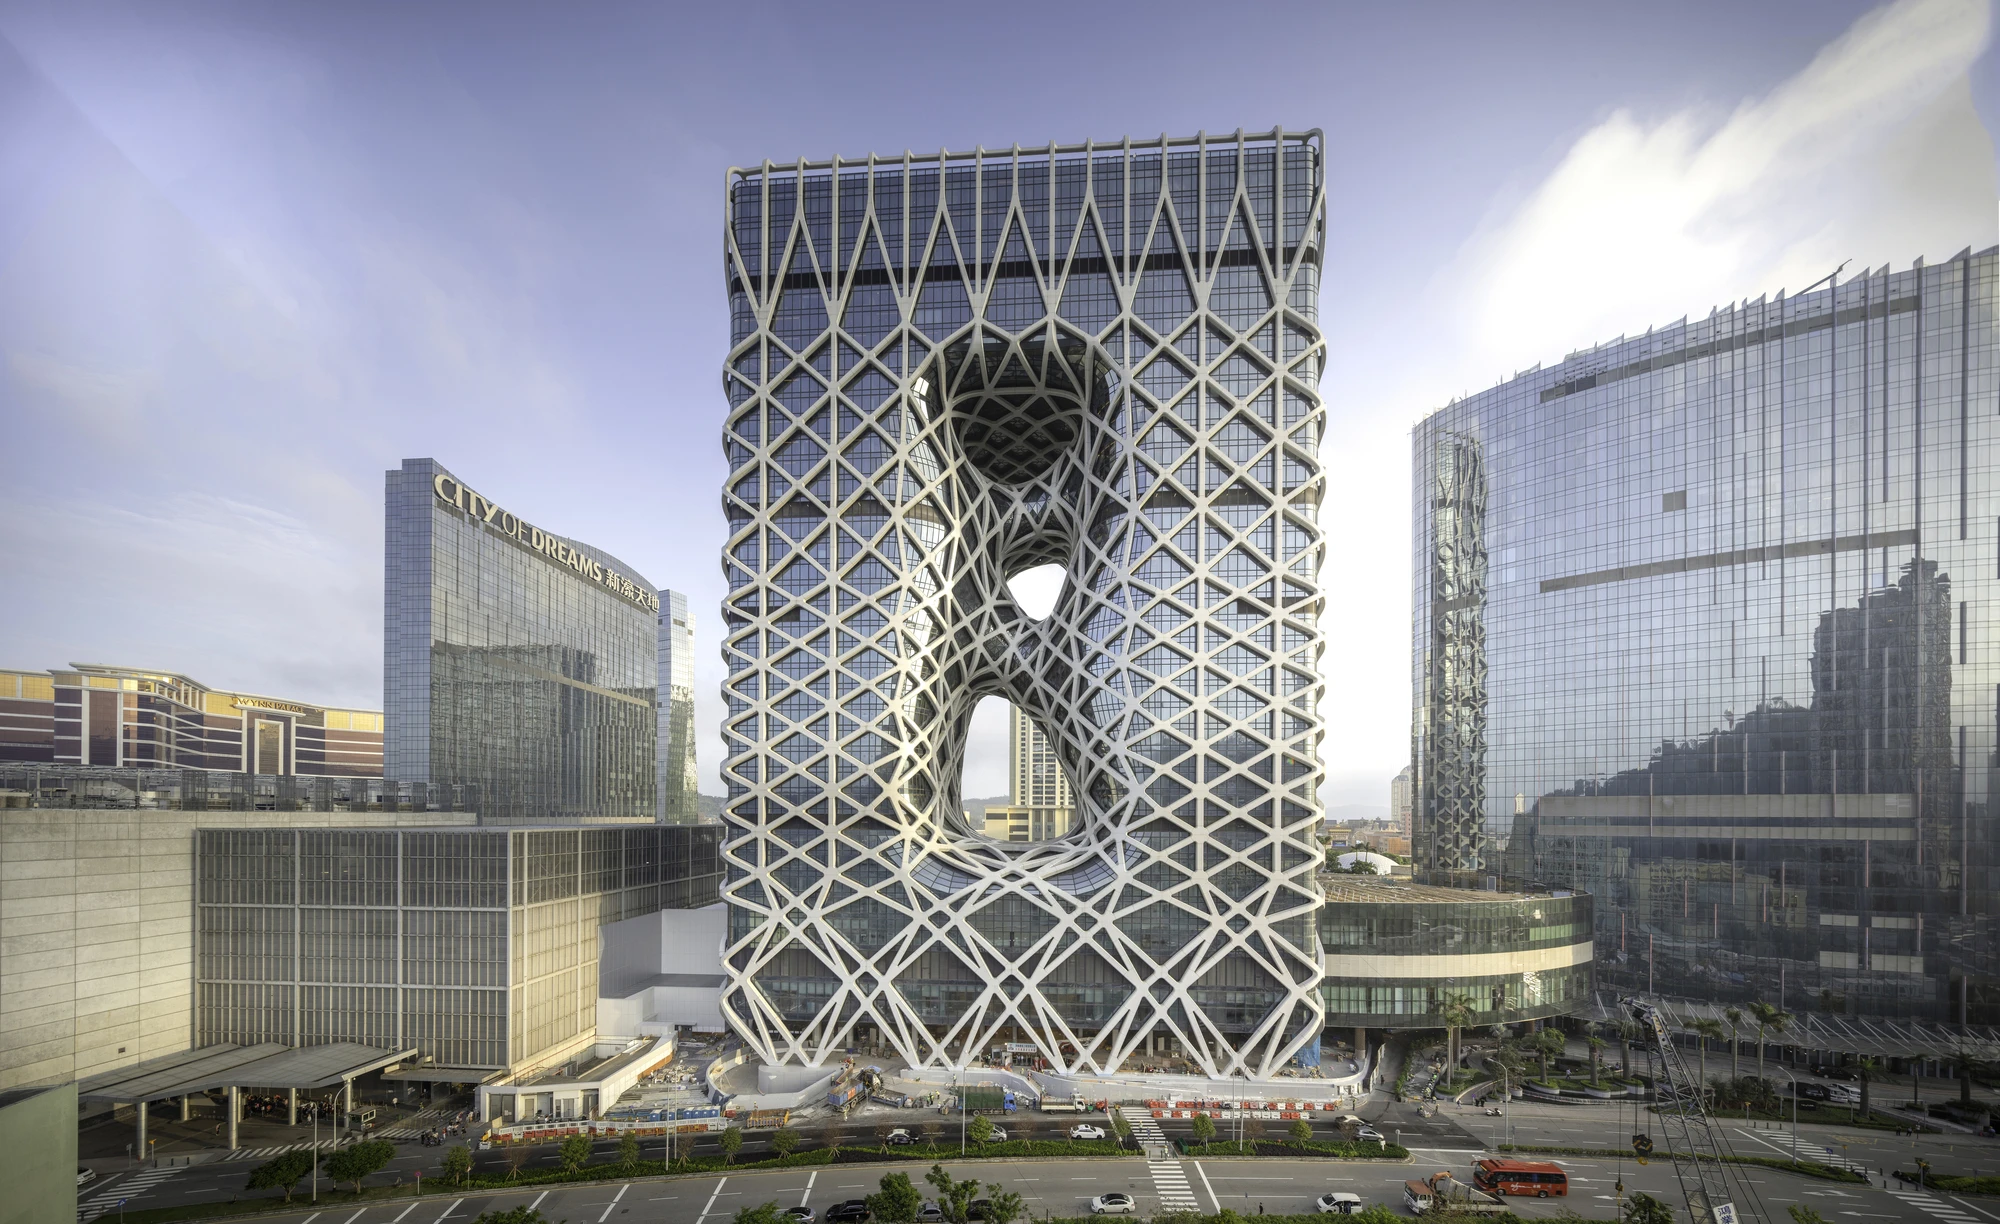 Morpheus Hotel in Macau | Zaha Hadid Architects